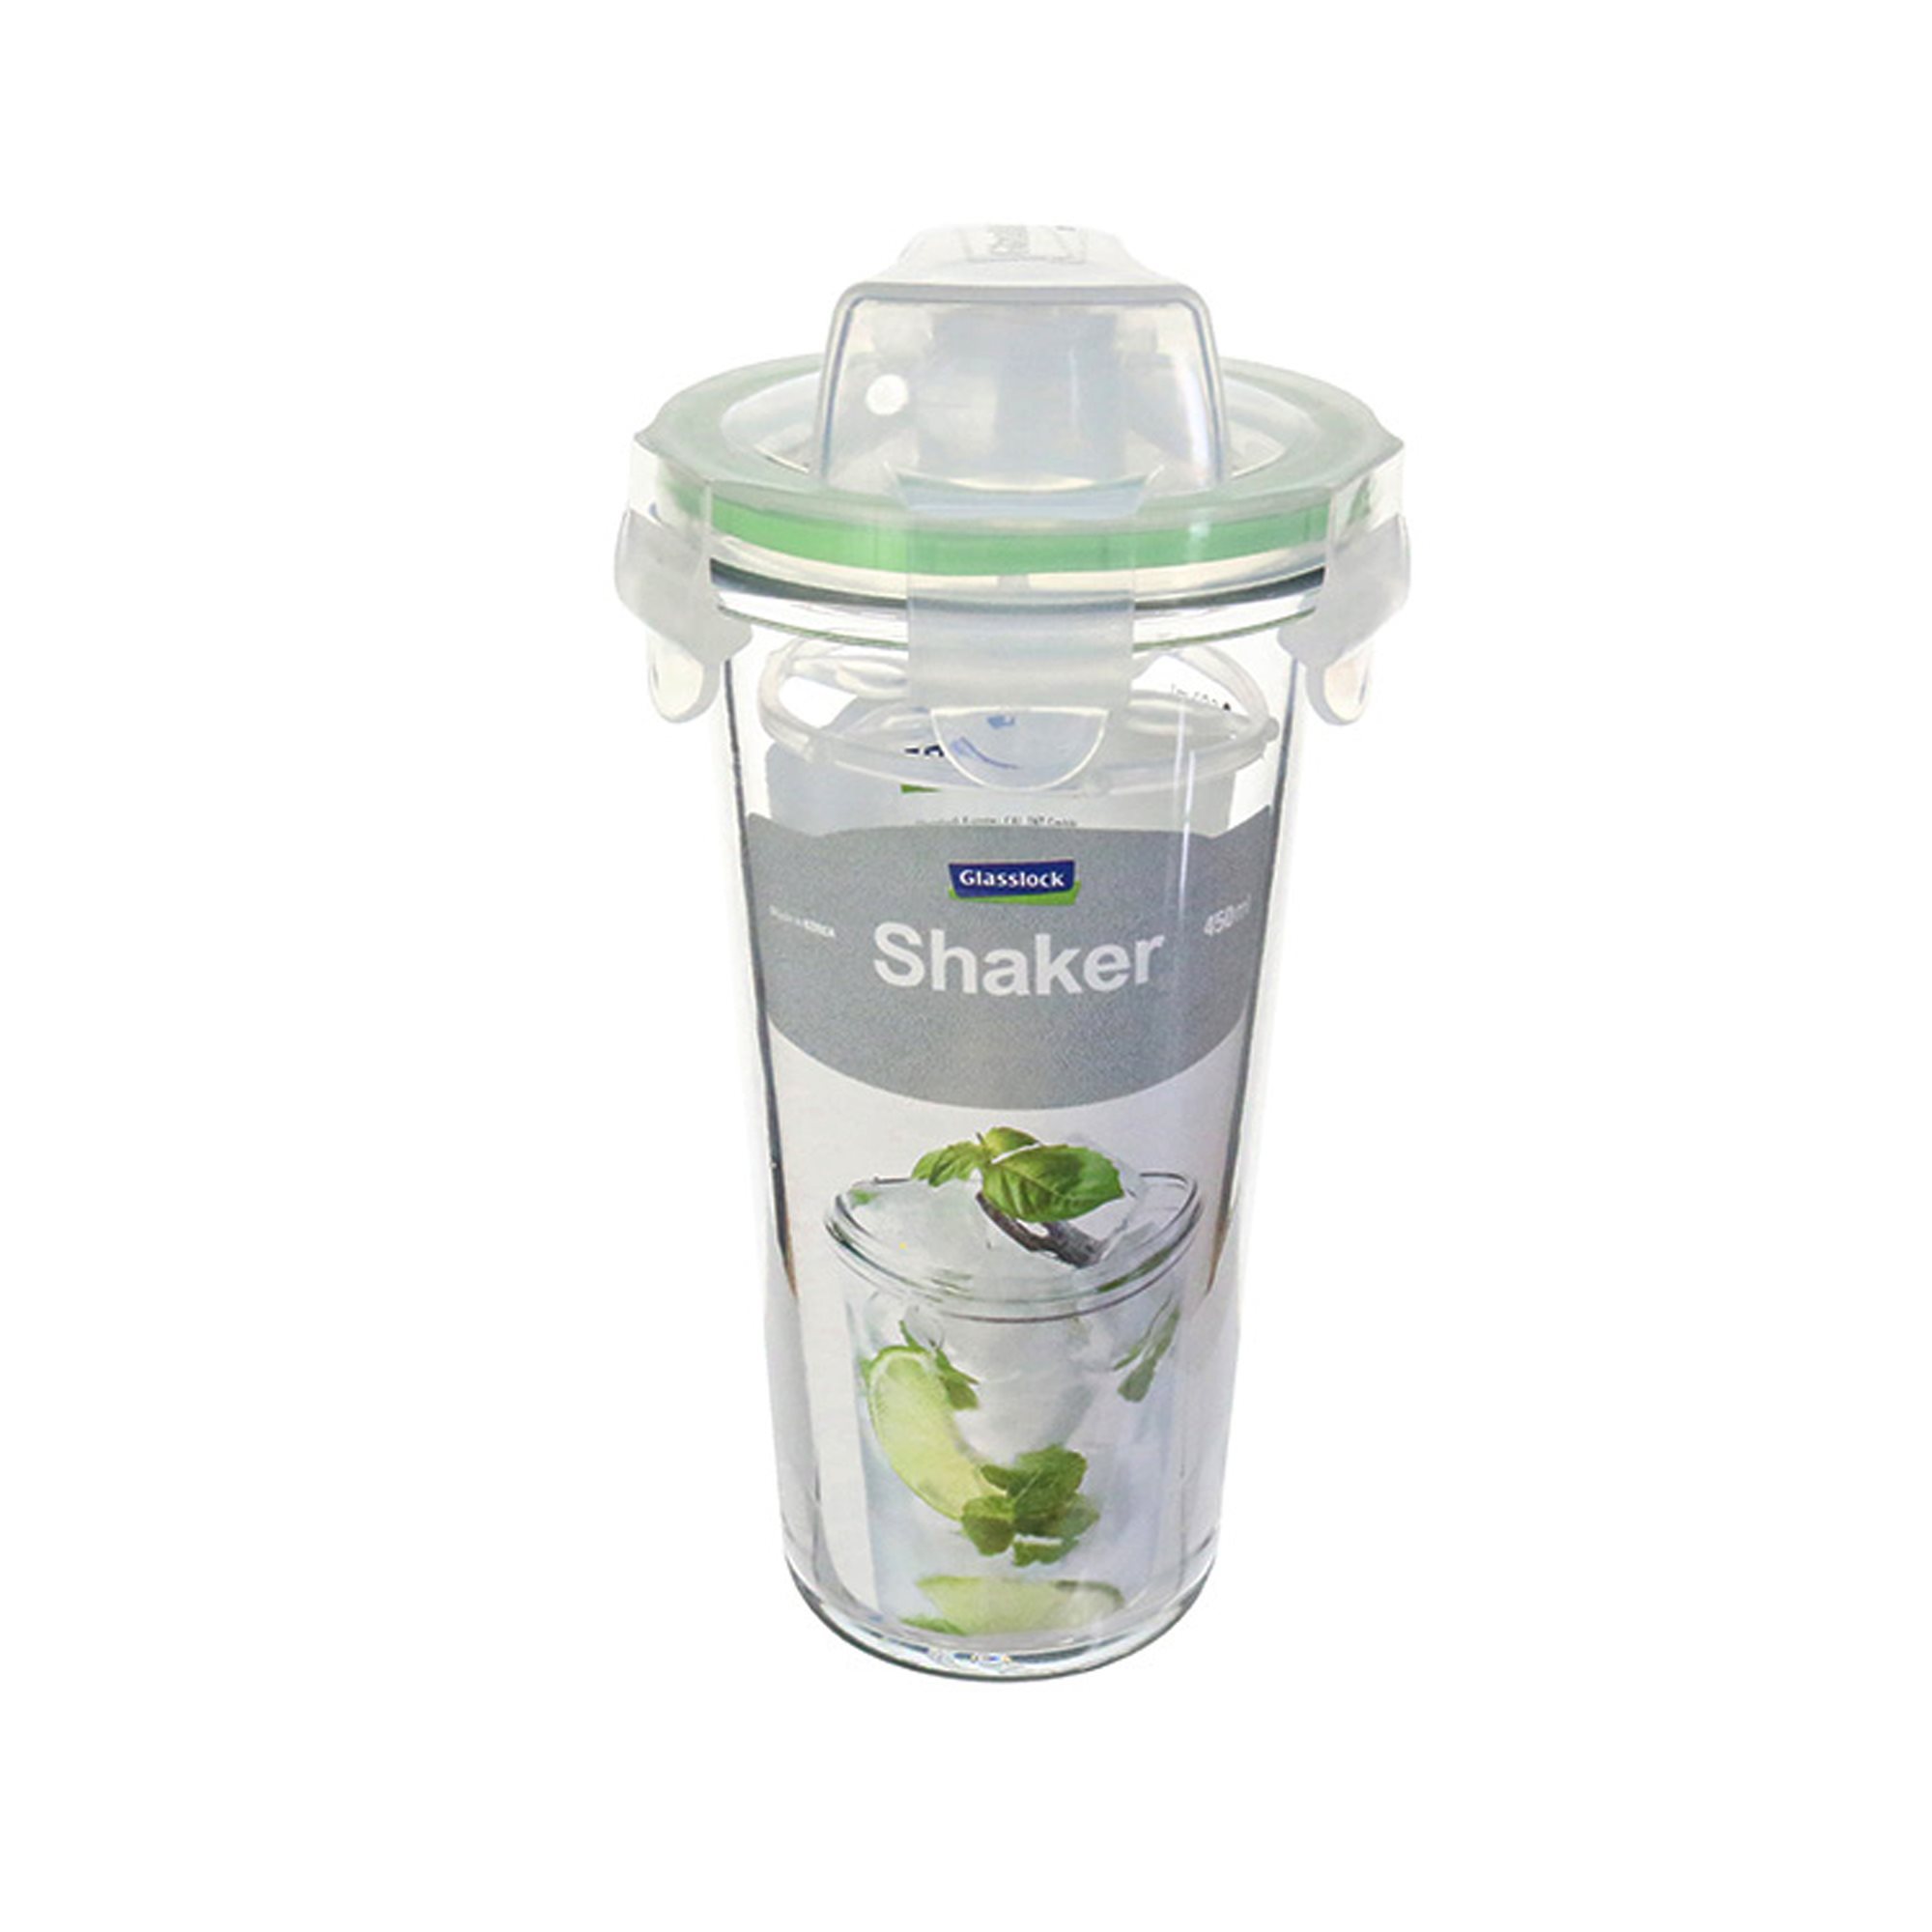 Glass shaker, Glasslock KitchenShop | - ml 450